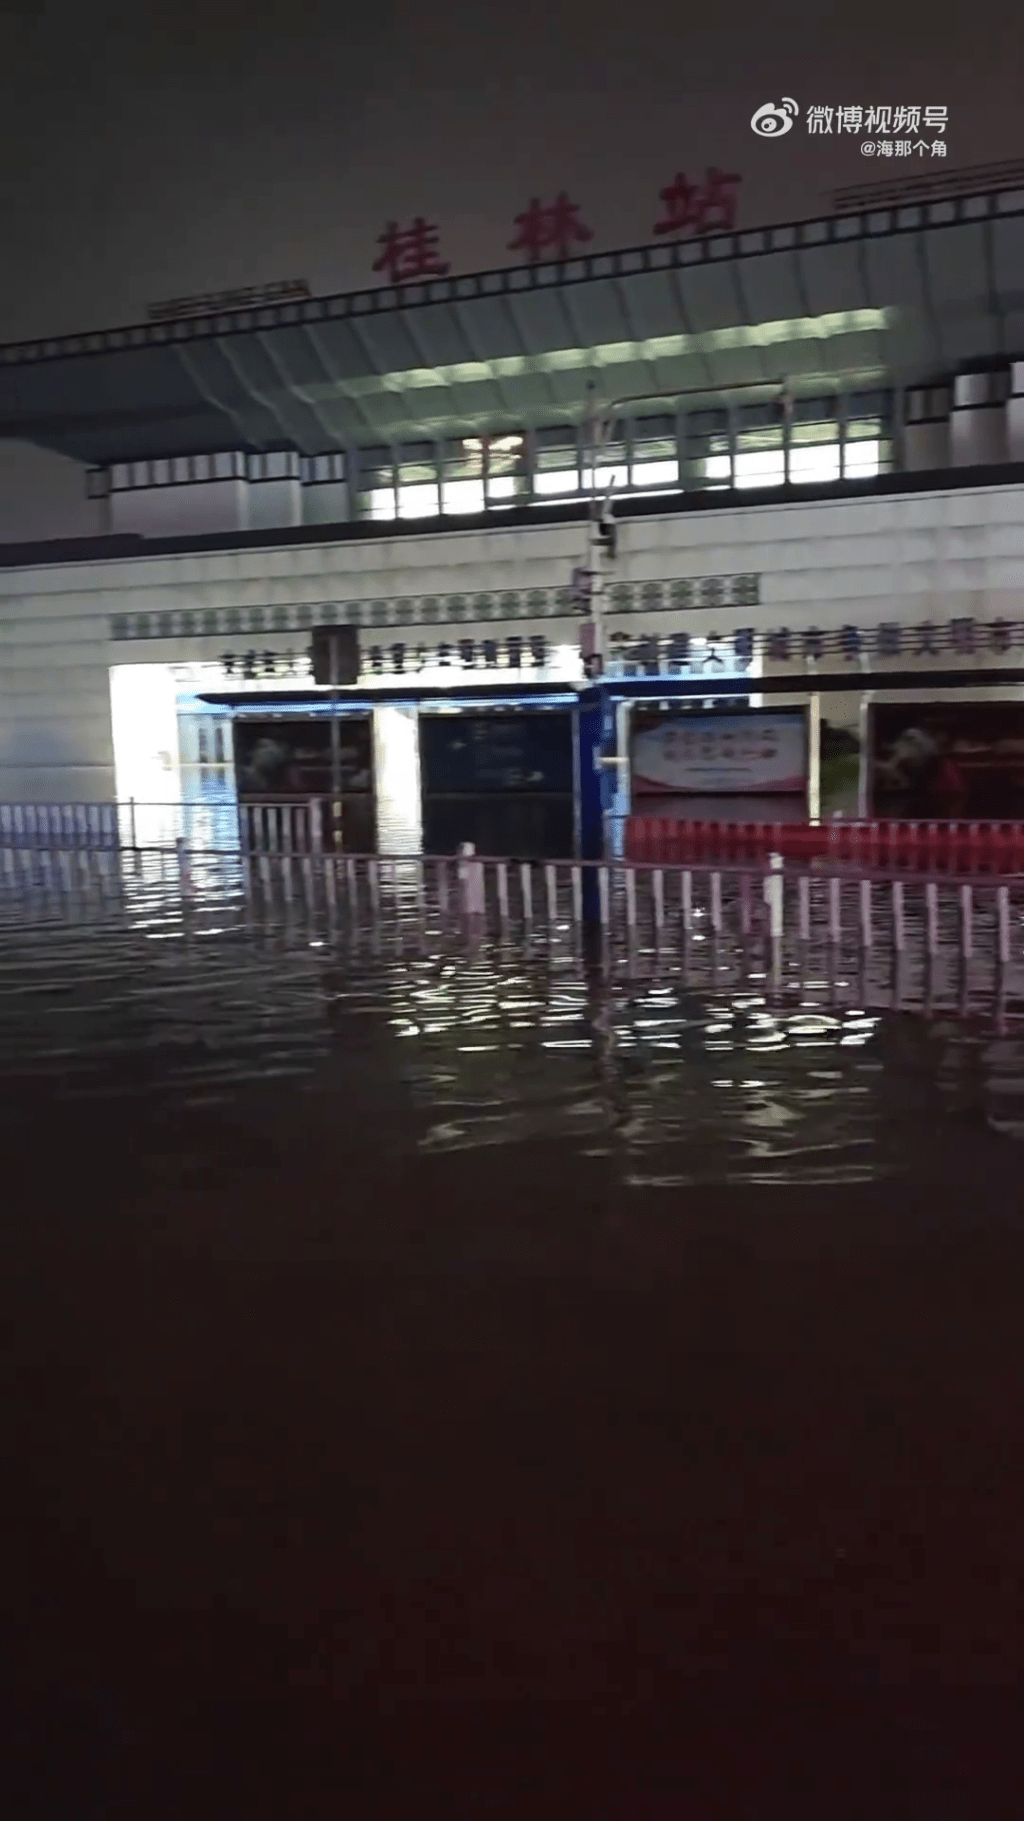 桂林火車站被淹。 微博